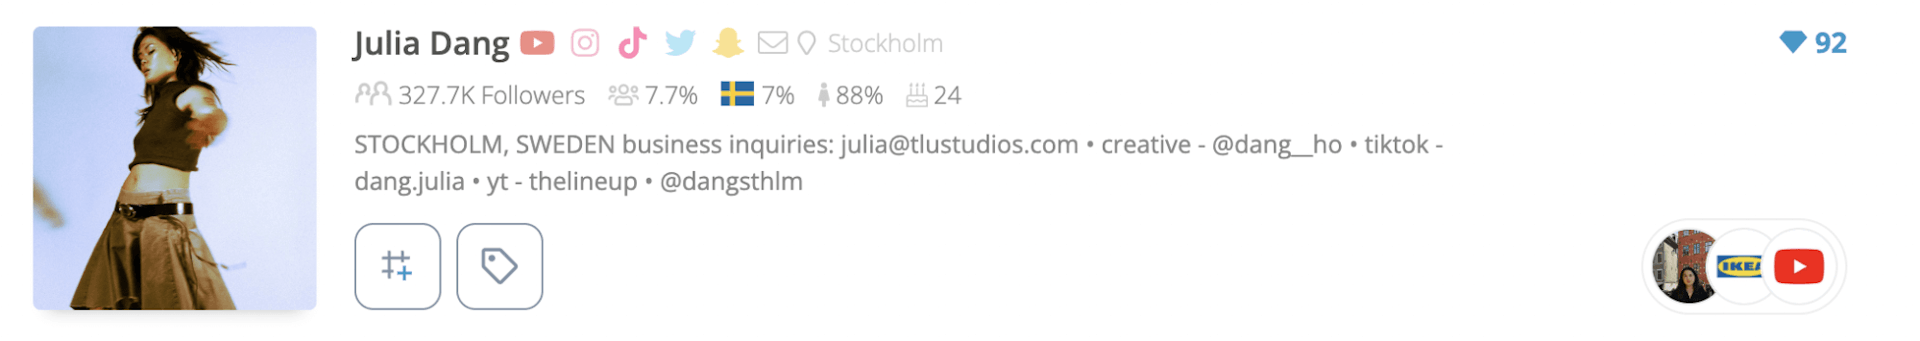 List of the top influencers in Sweden: Julia Dang